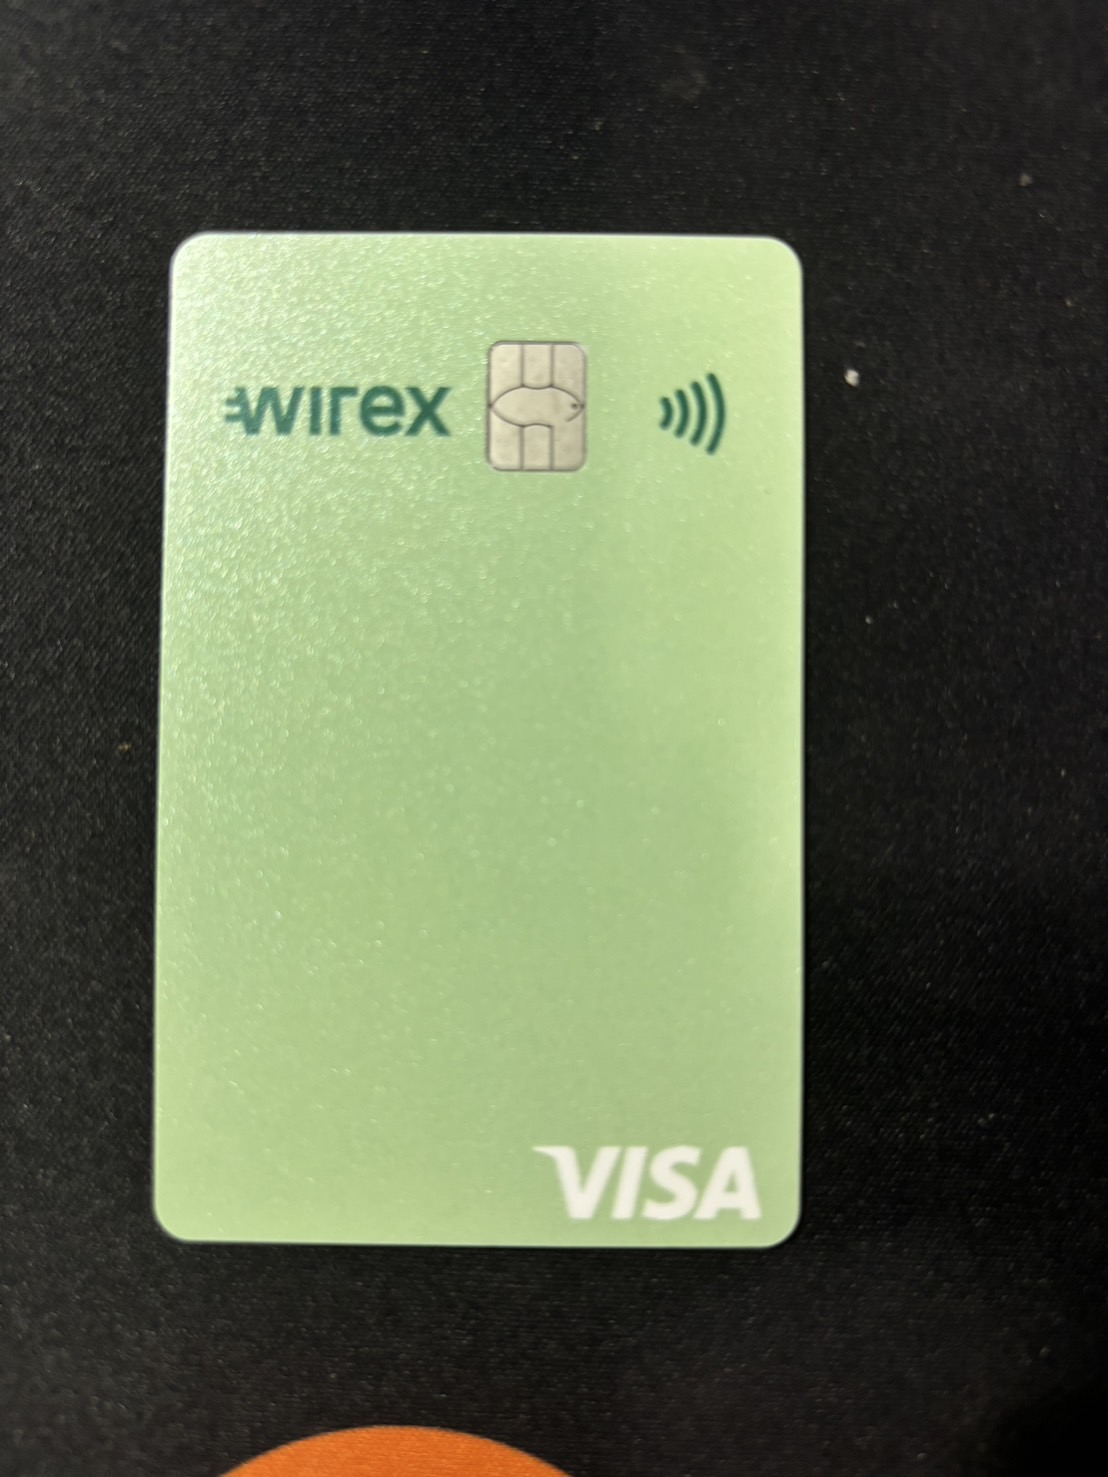 新加坡wirex 加密貨幣卡